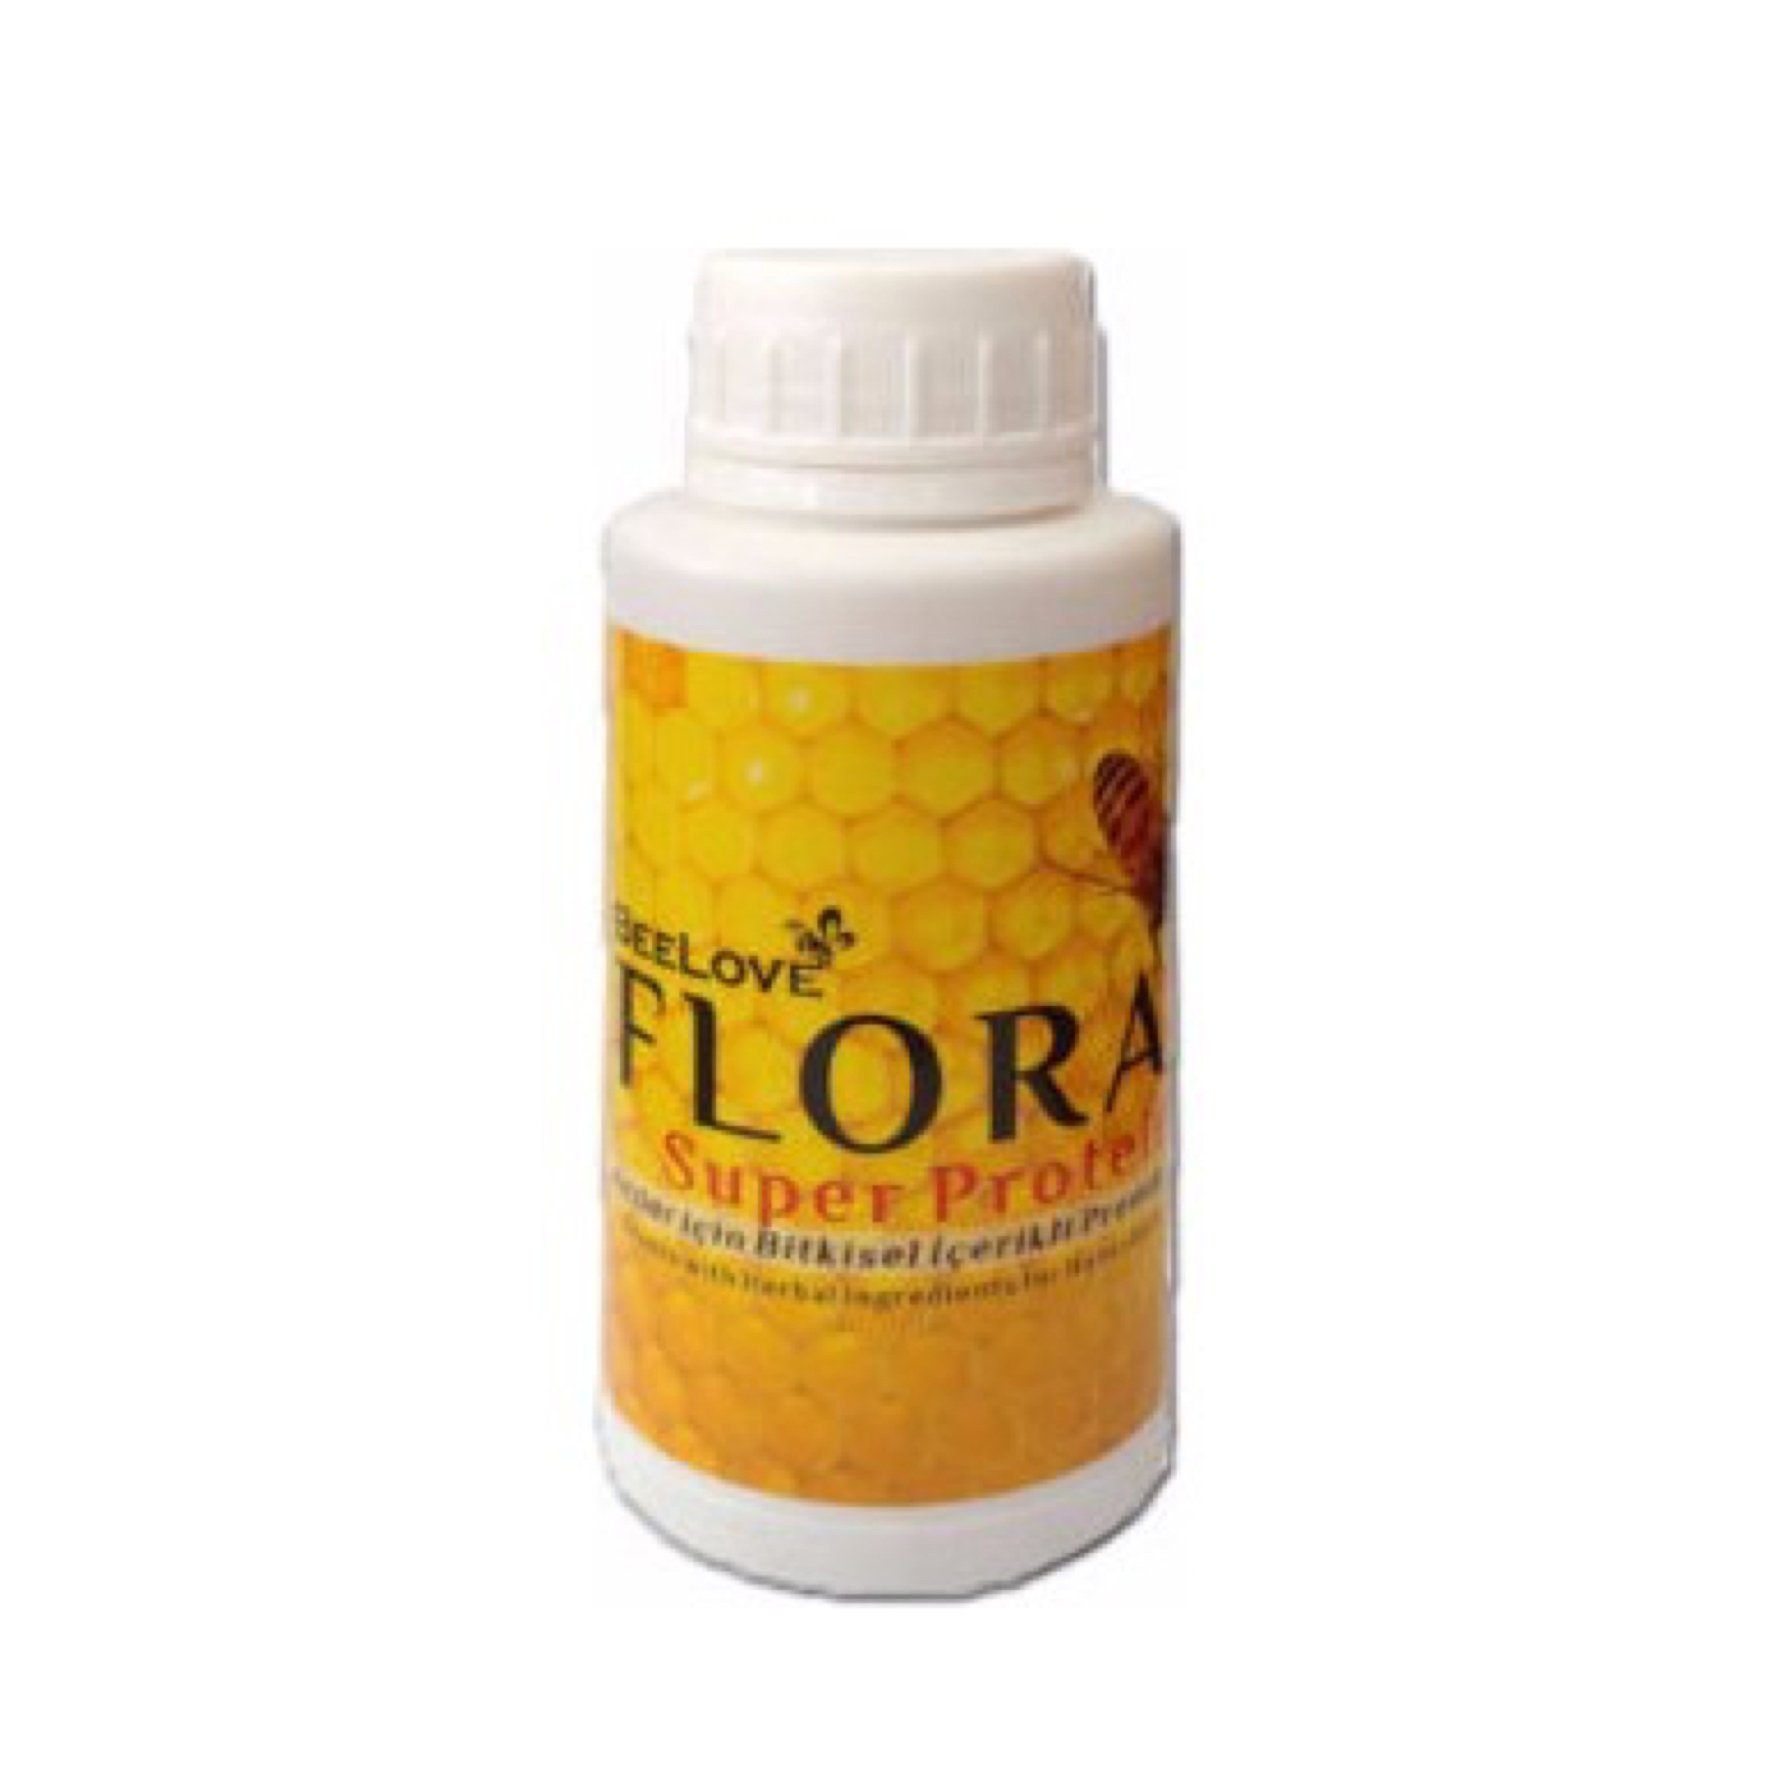 Flora Süper Protein - 1000 ml